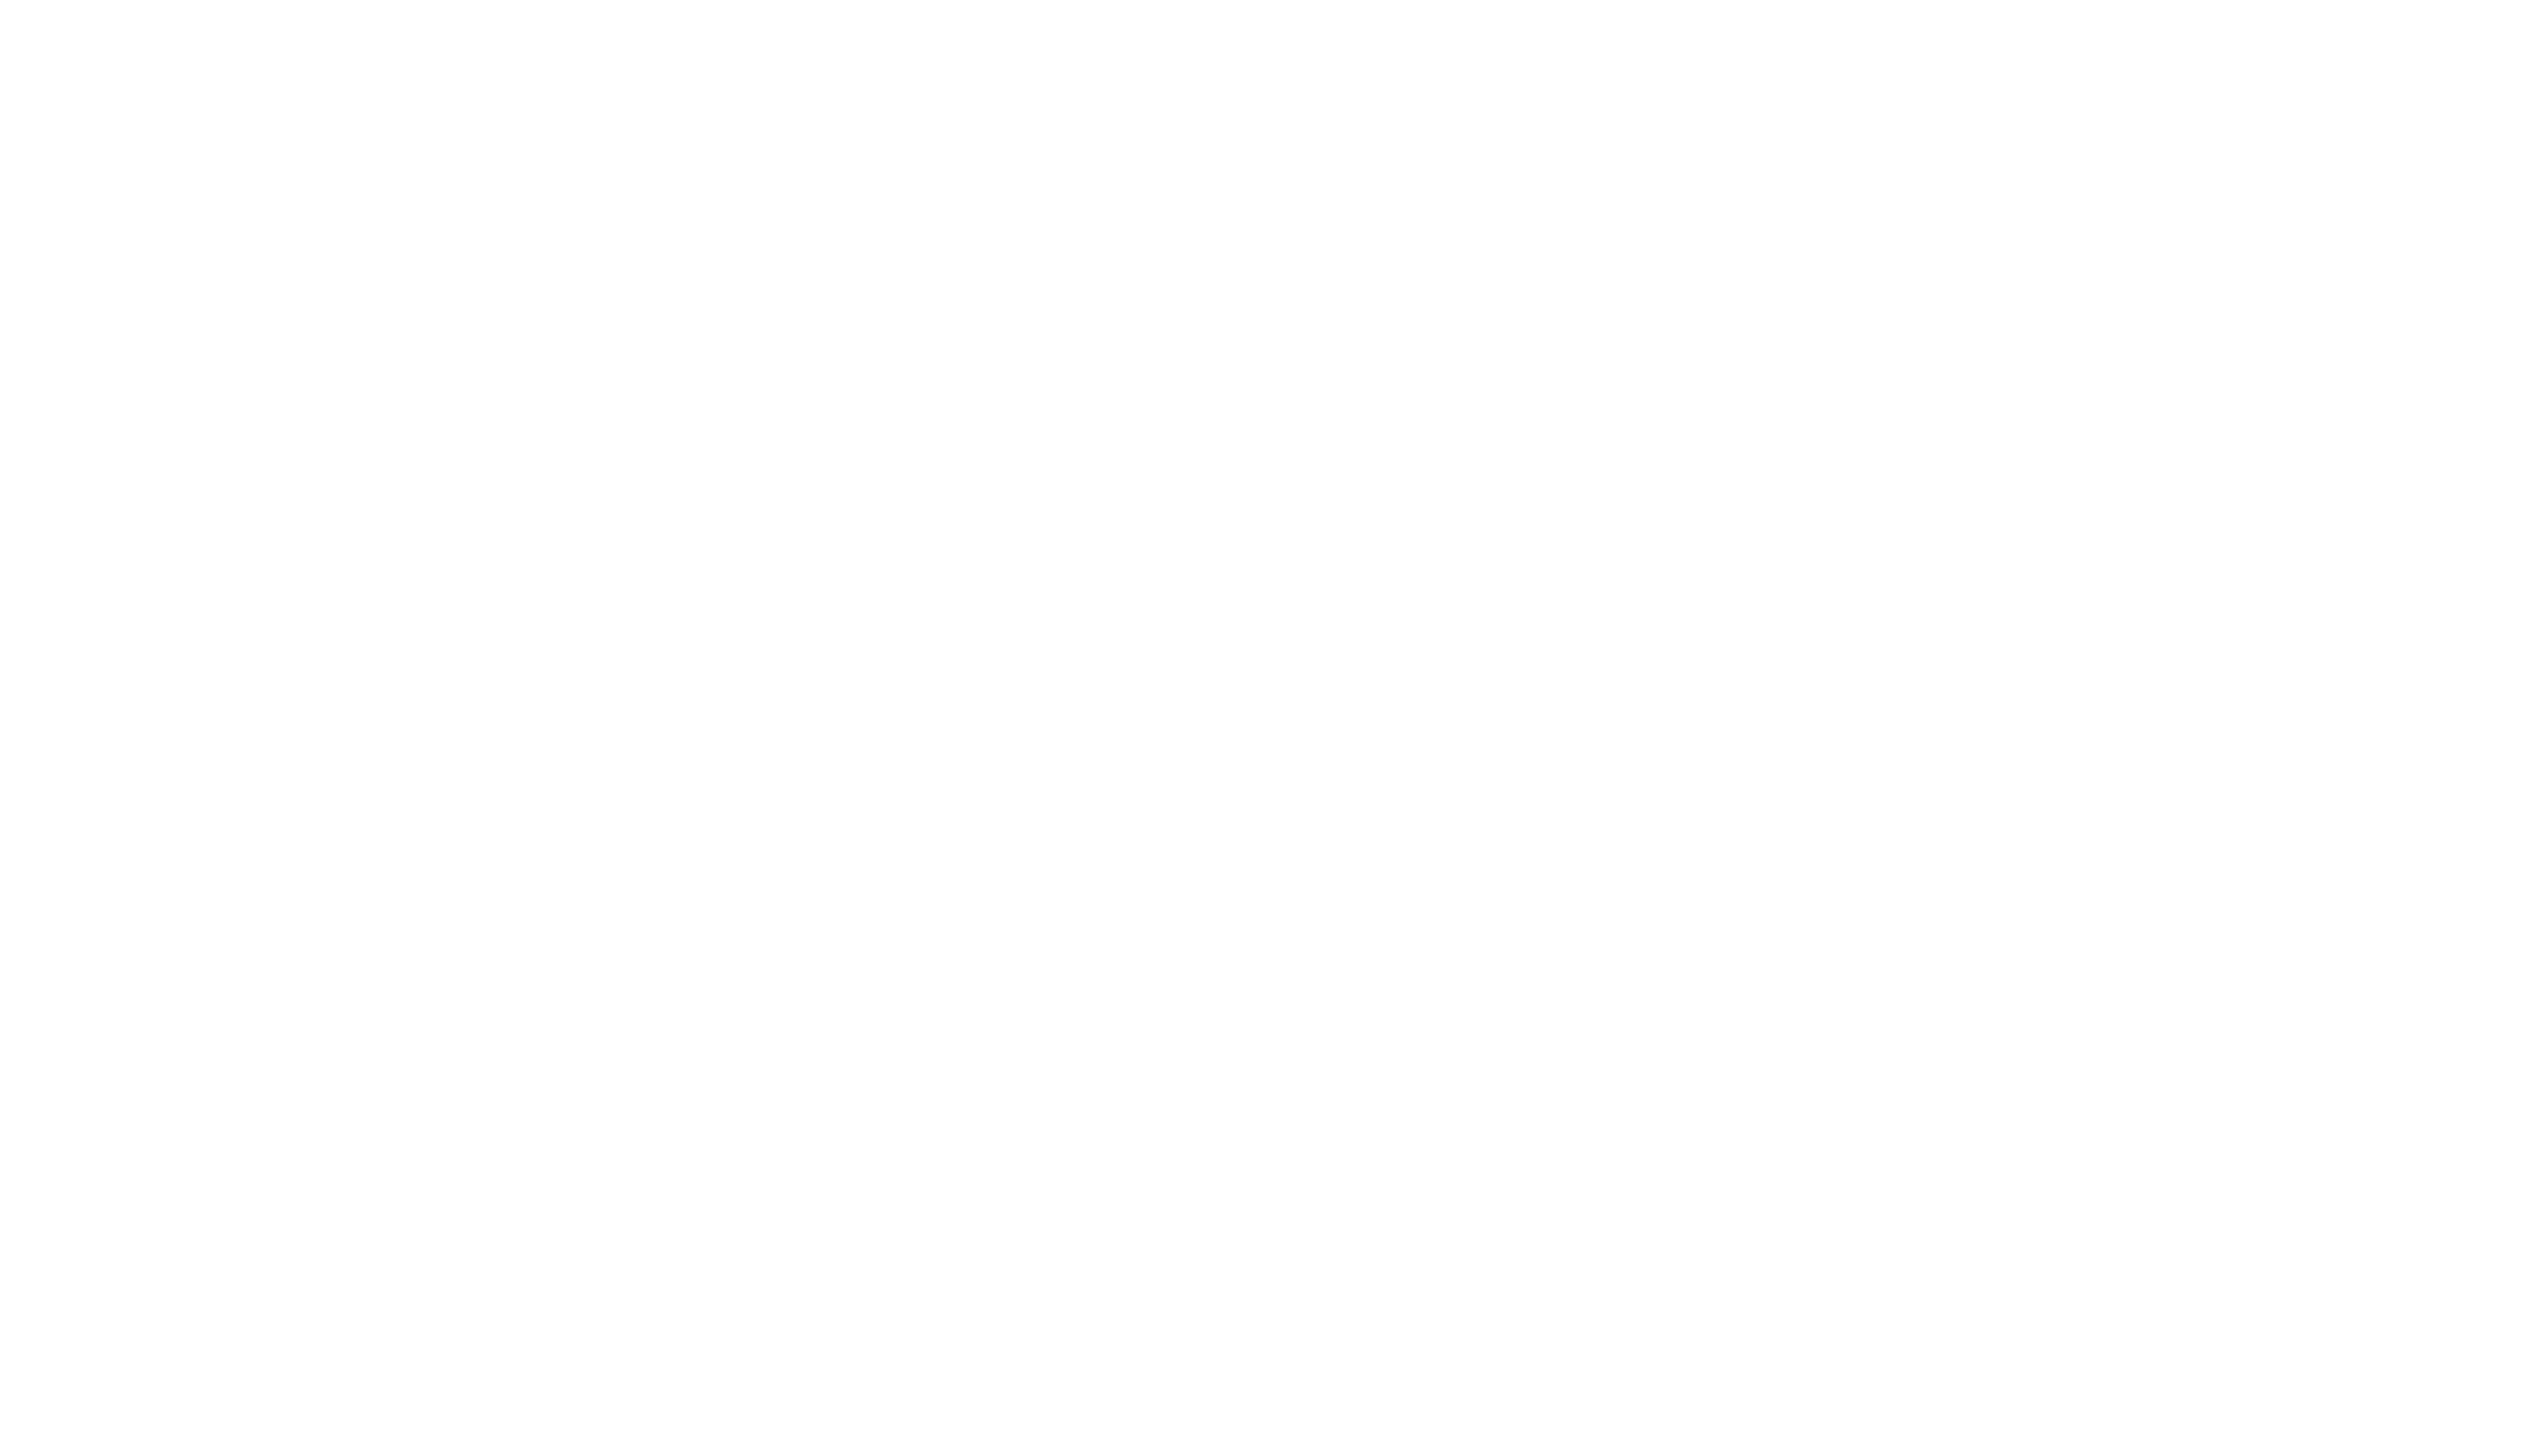 Điện máy Nguyễn Đức | Laptop, Tivi, Tủ lạnh, Máy giặt giá Tốt